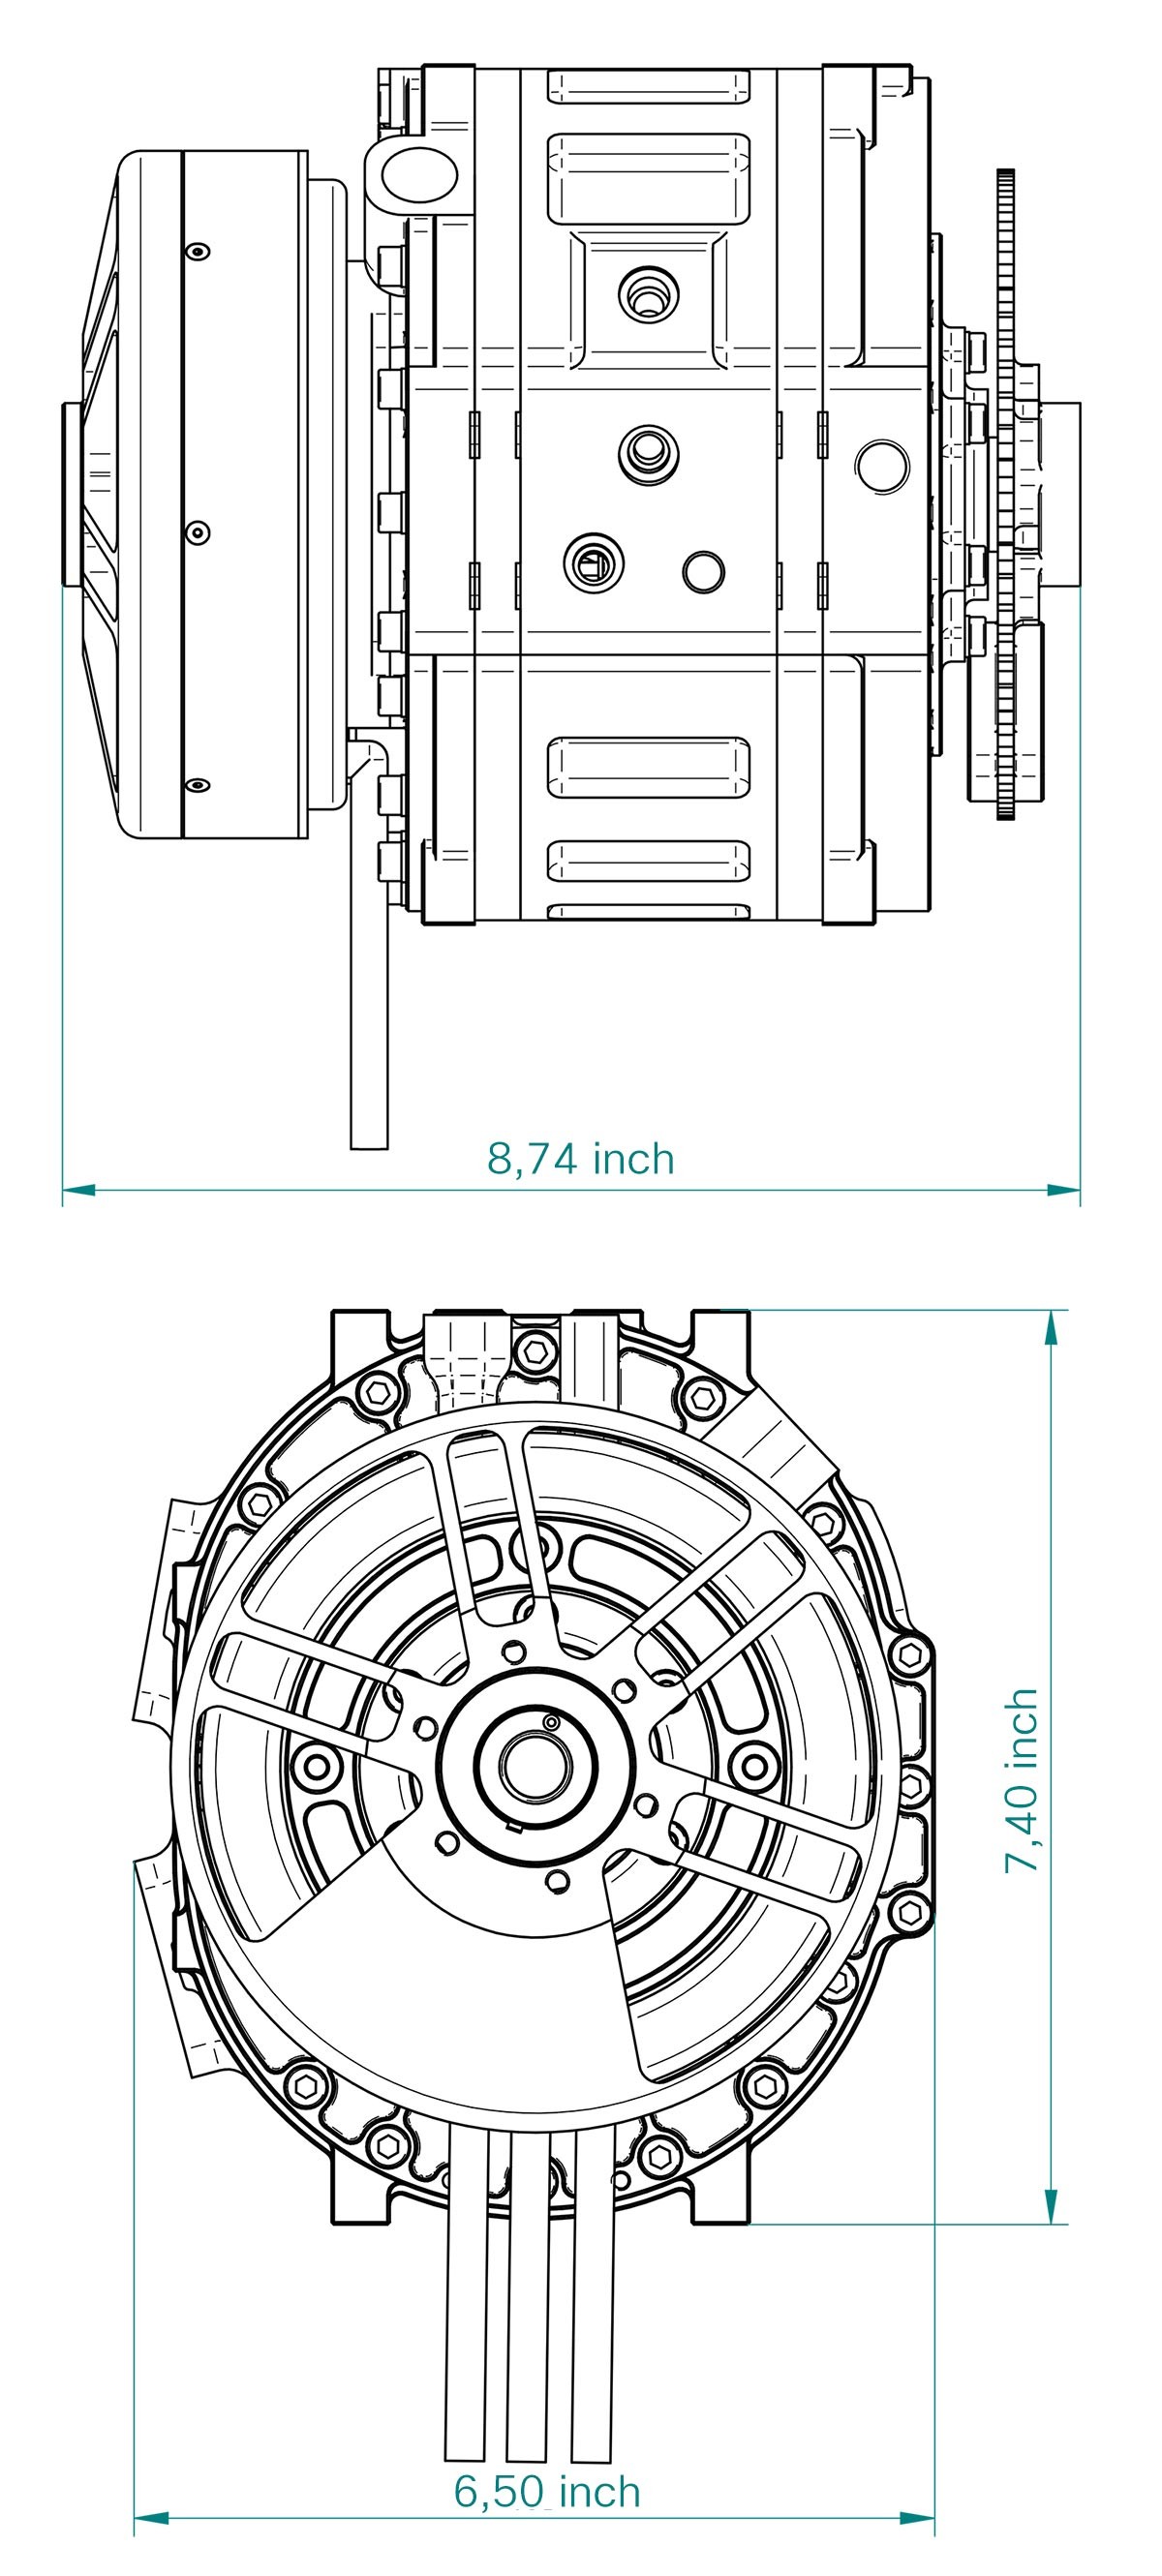 Wankel Rotary Engine Diagram 3w International Of Wankel Rotary Engine Diagram